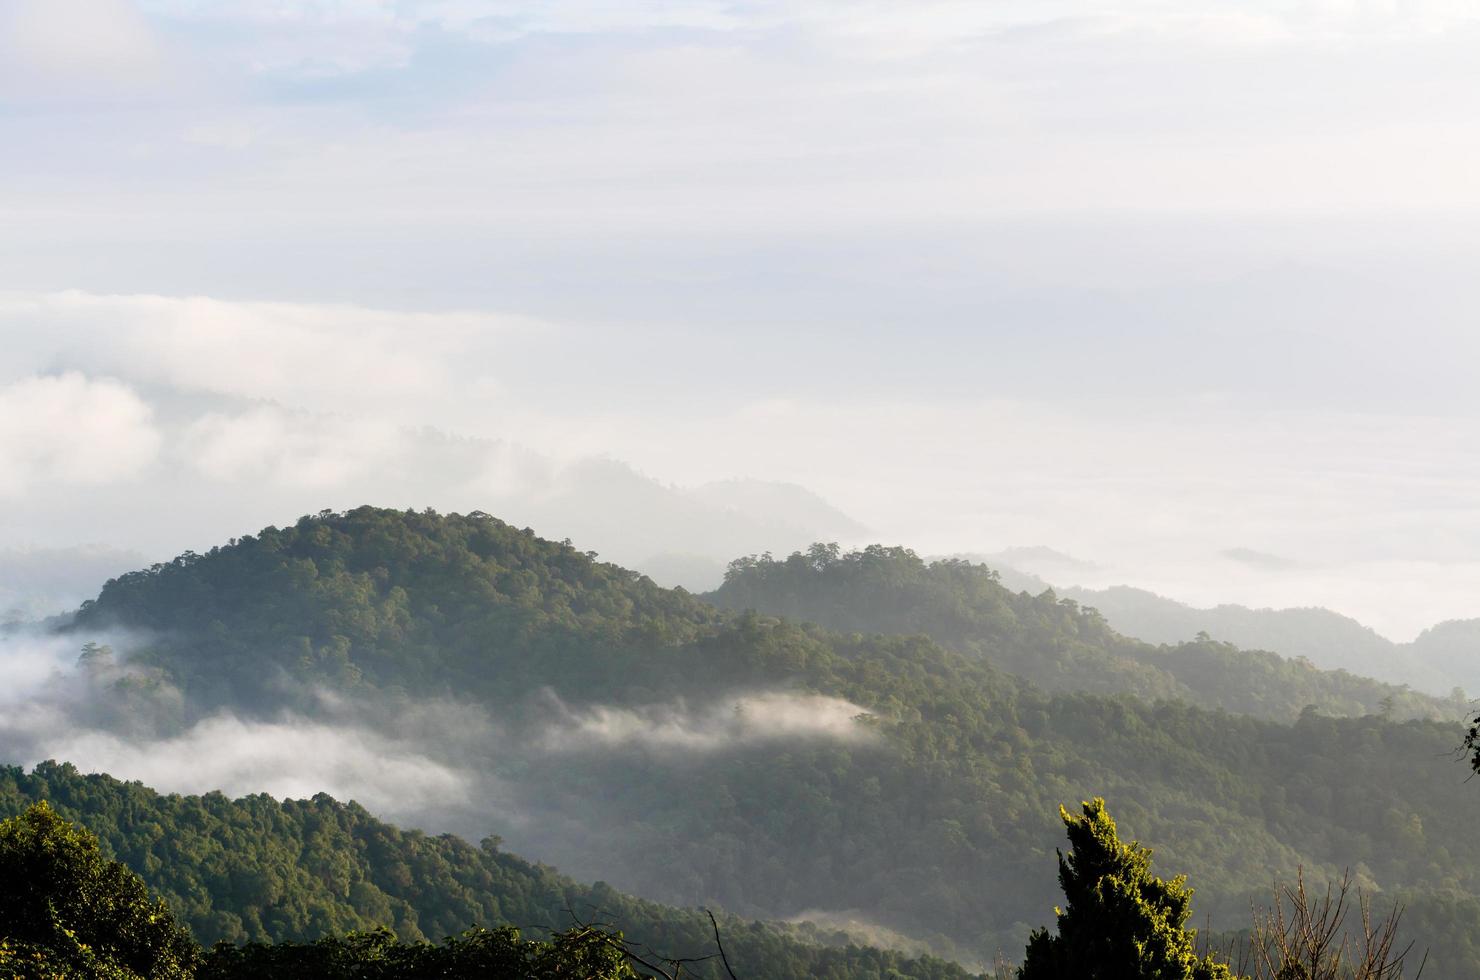 landschap van wolk bovenstaand cordillera in de ochtend- foto